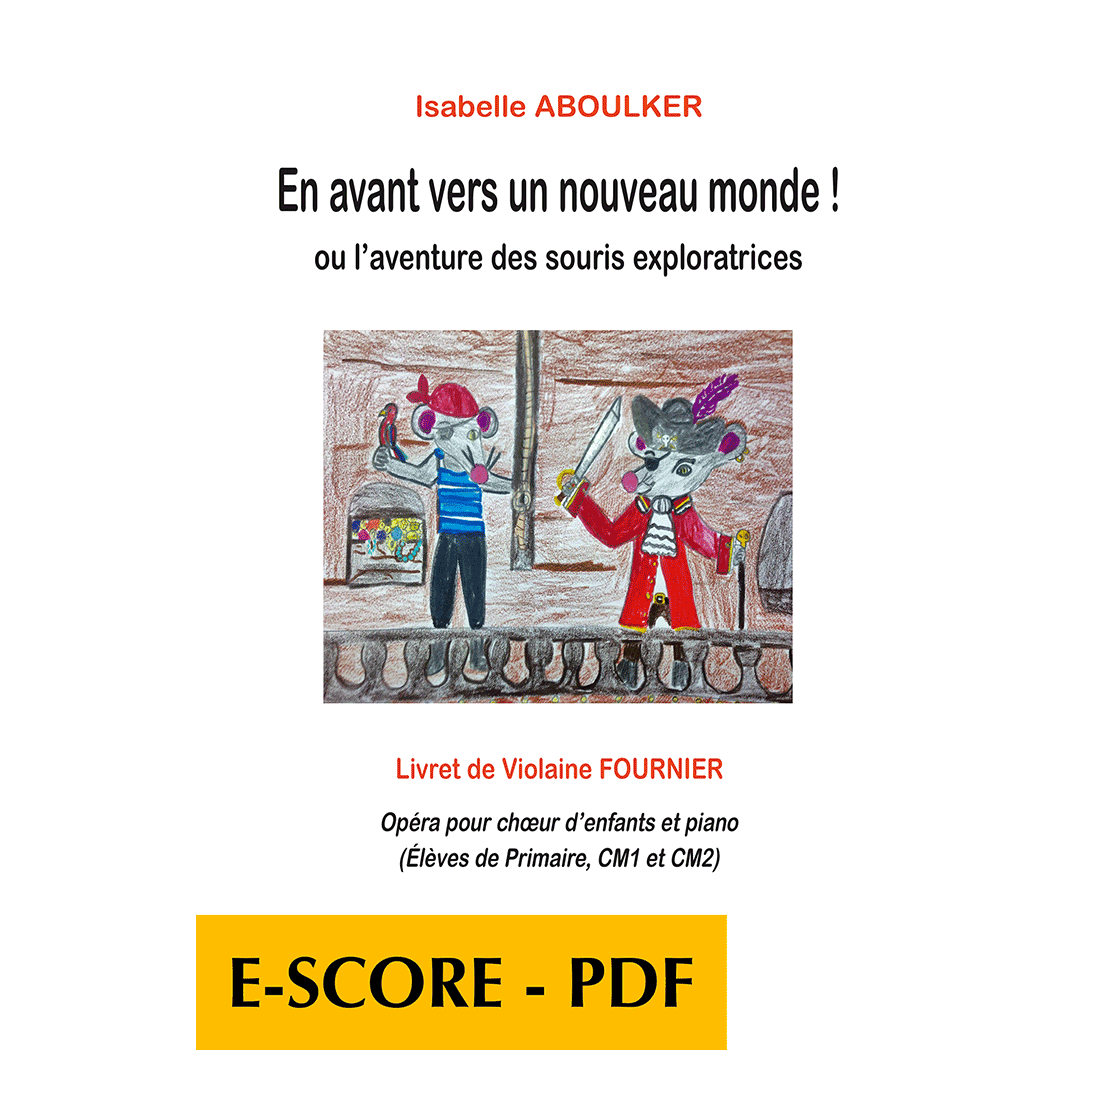 En avant ver un monde nouveau ! - Opéra pour choeur d'enfants et piano - E-score PDF